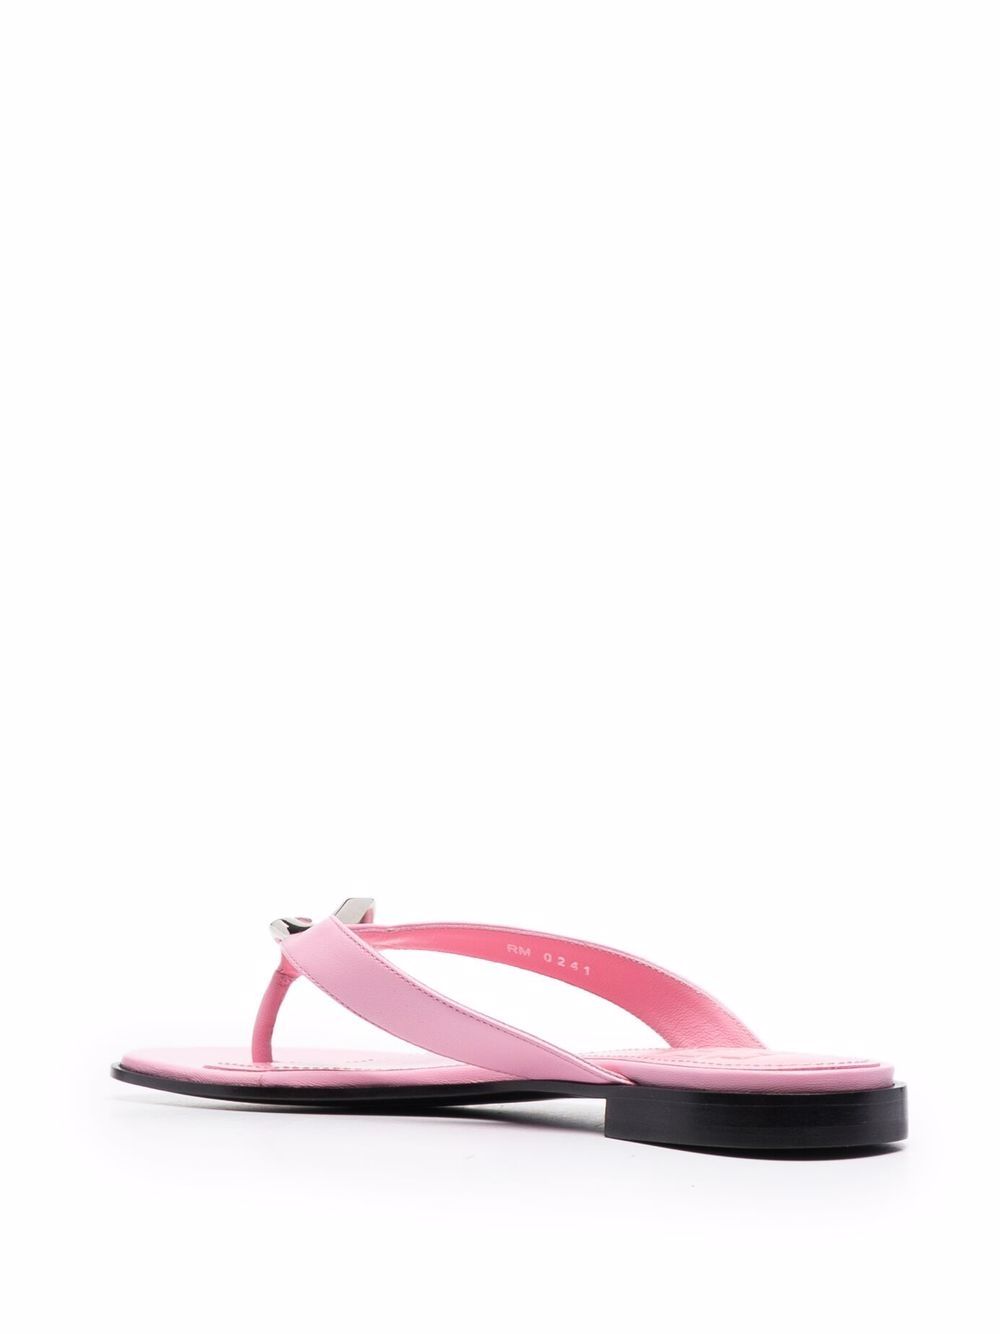 фото Givenchy сандалии с g-образной пряжкой